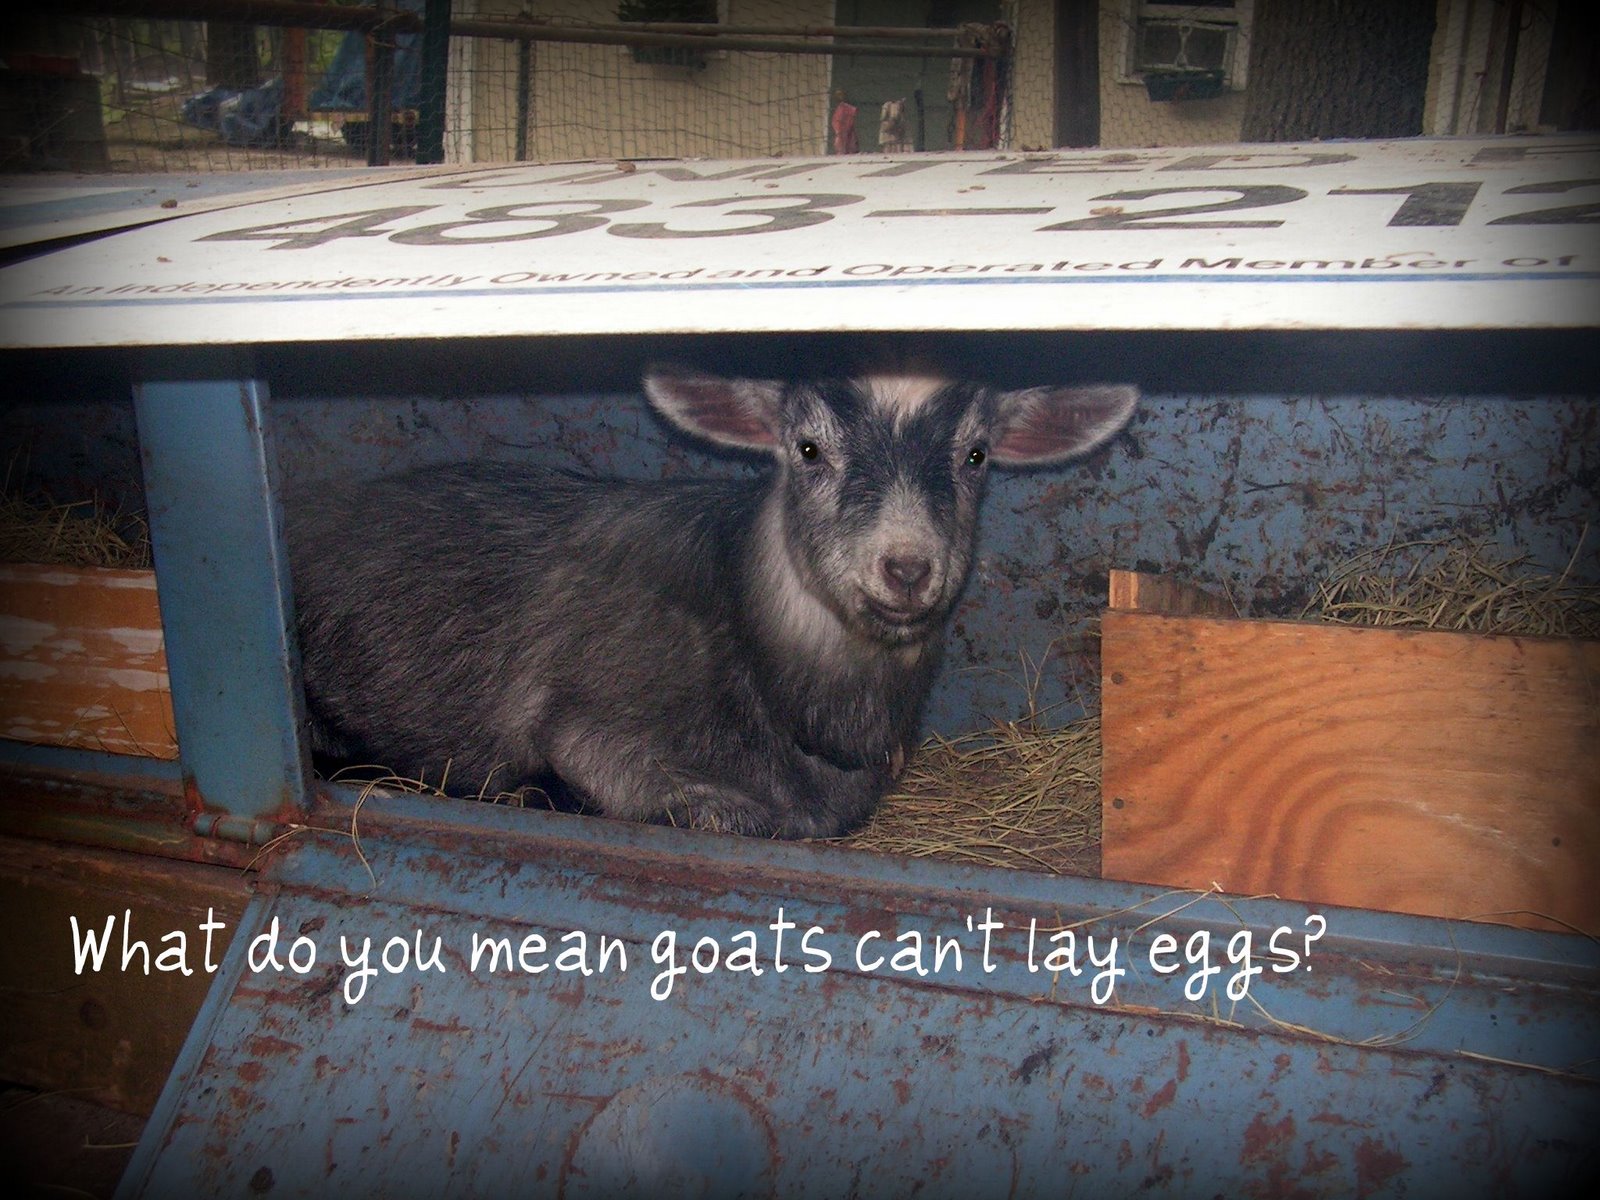 [goat+egg+001.jpg]